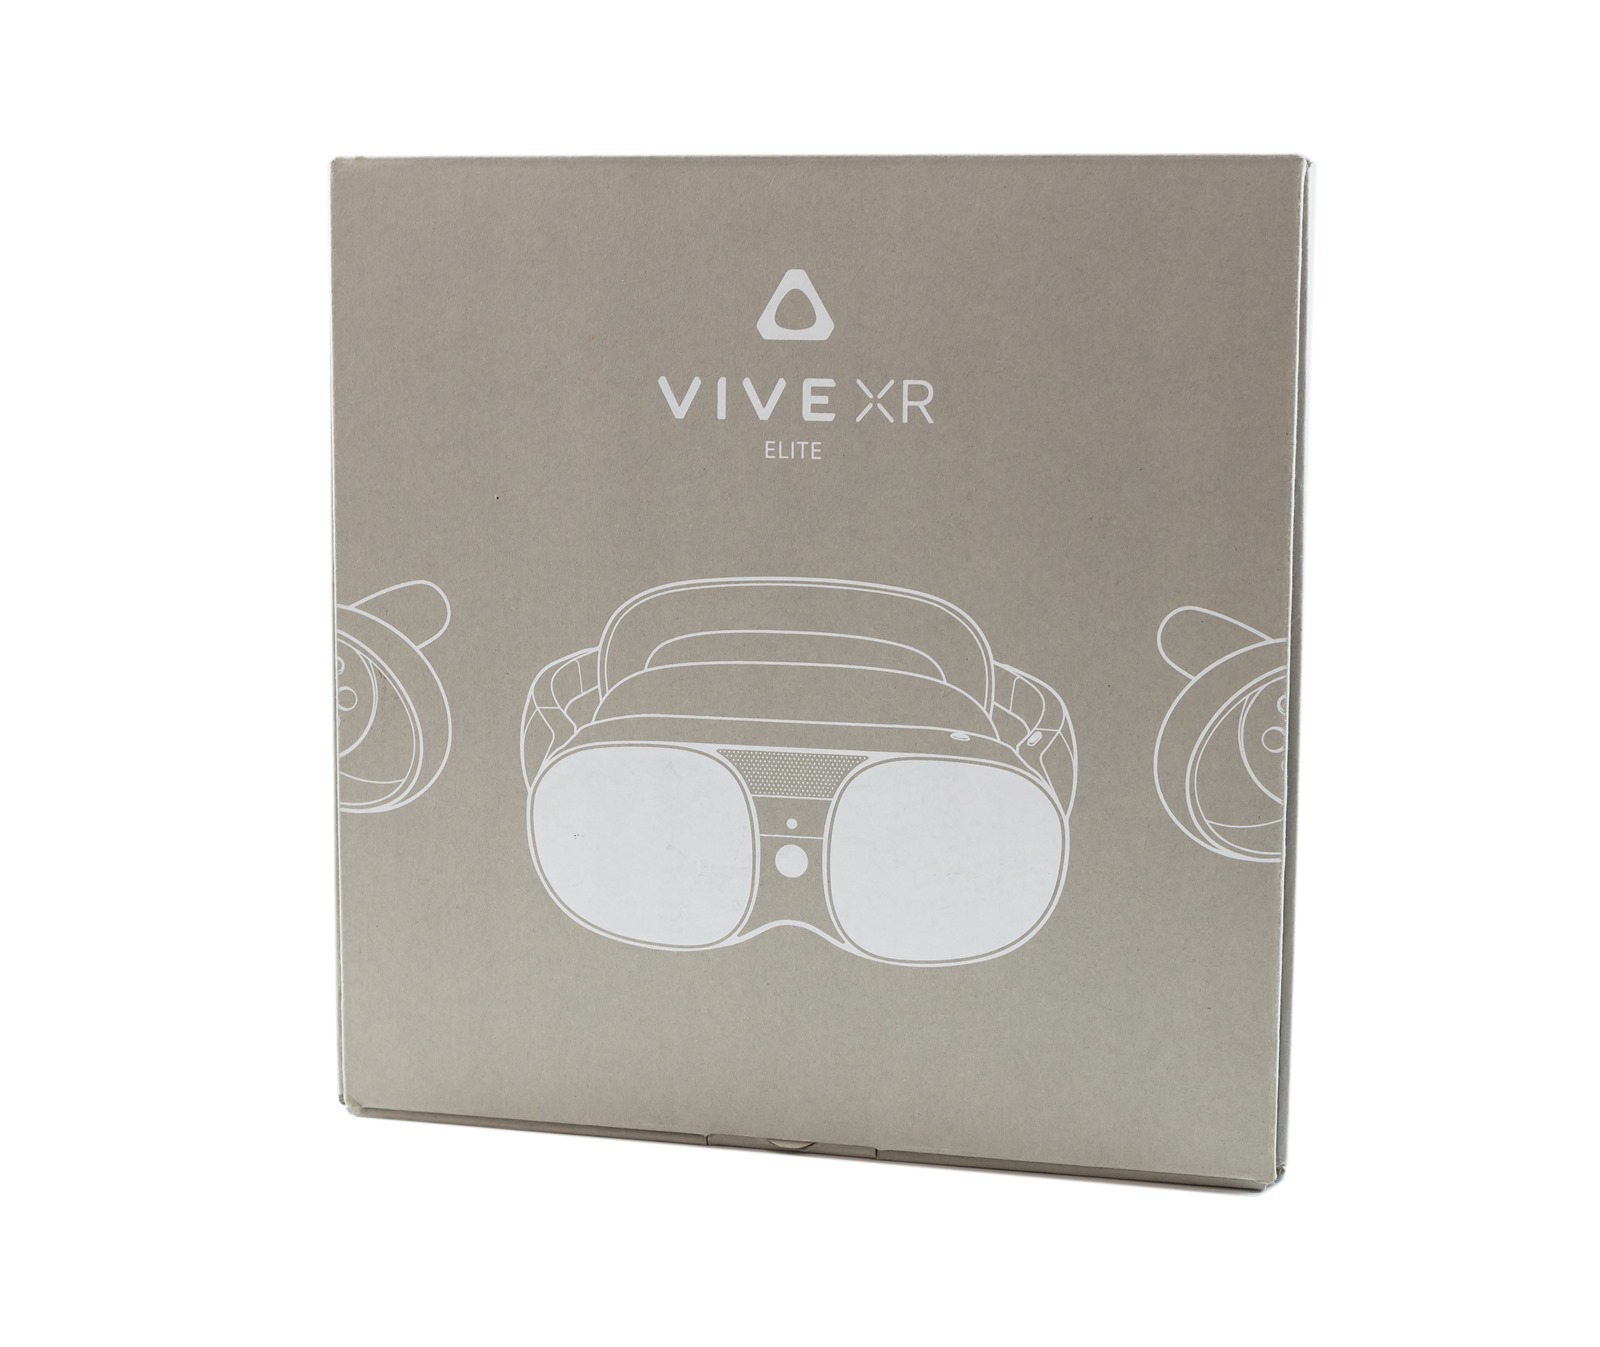 可分體可無線串流 VIVE XR Elite 雙 11 贈 Steam 禮券 一體機通吃 VR / AR / MR 暢玩虛擬世界感受動漫大場景 @3C 達人廖阿輝